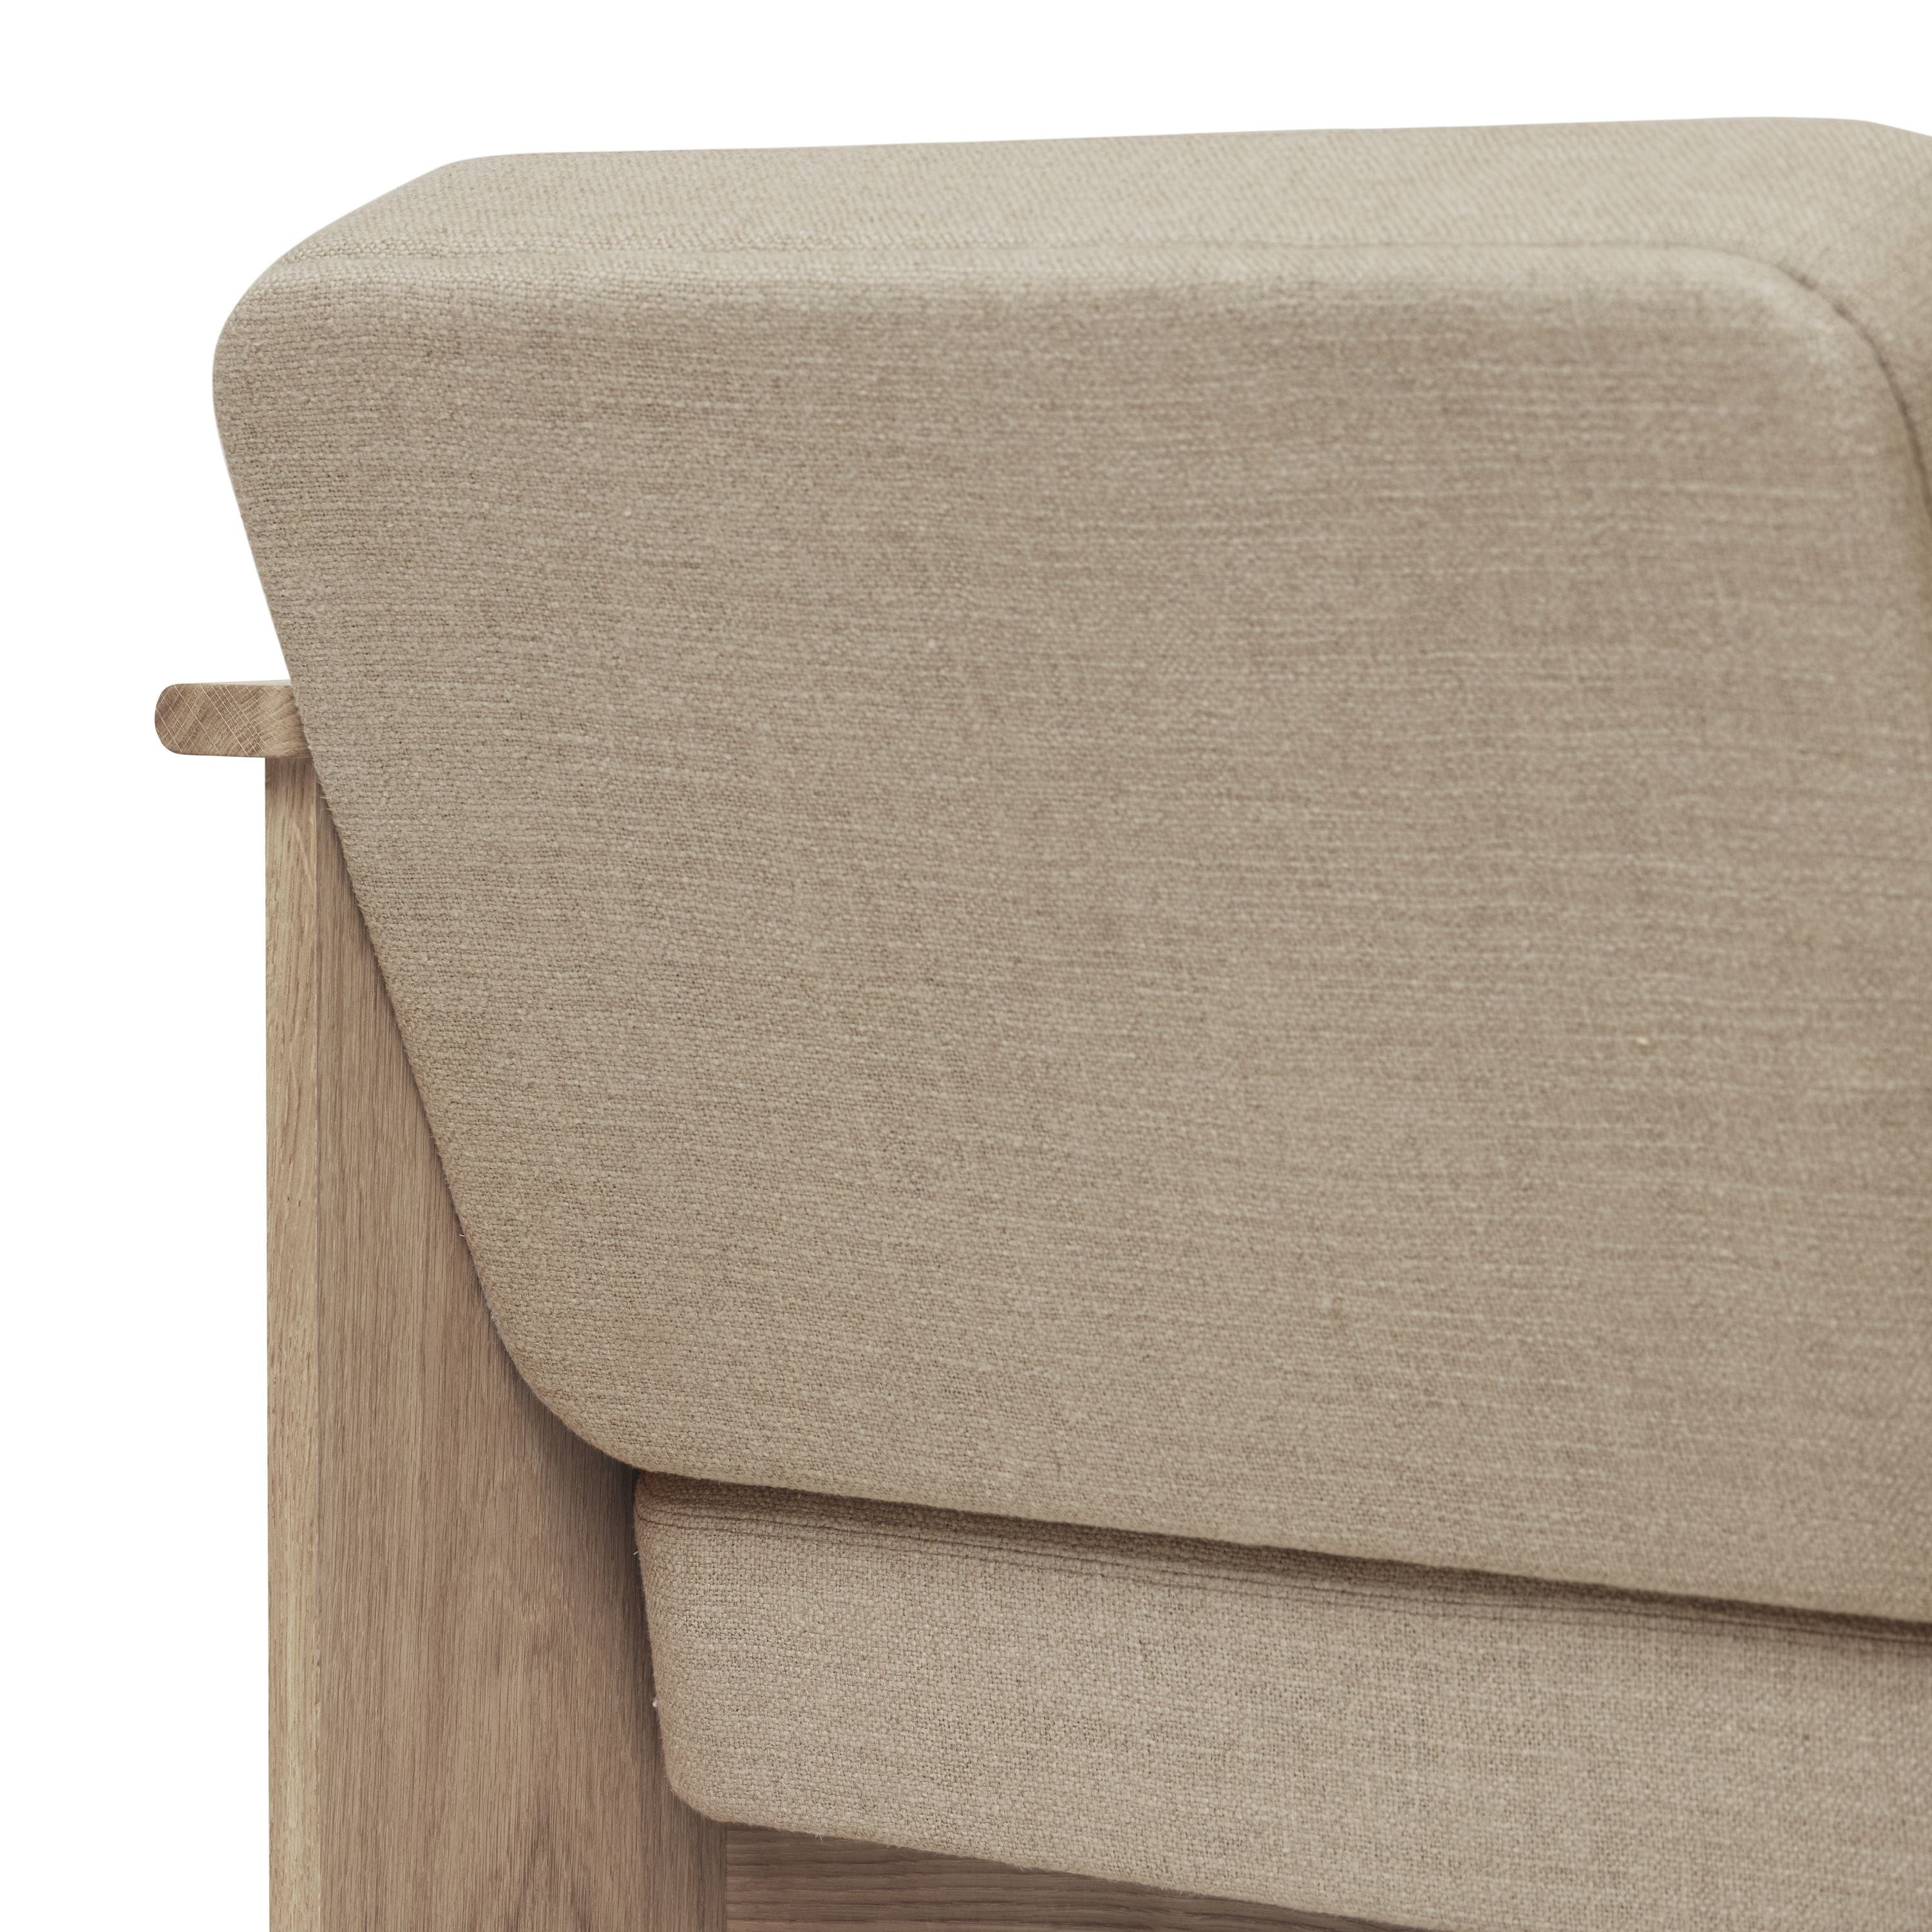 Form & Refine Block Lounge Chair. Weißöl Eiche